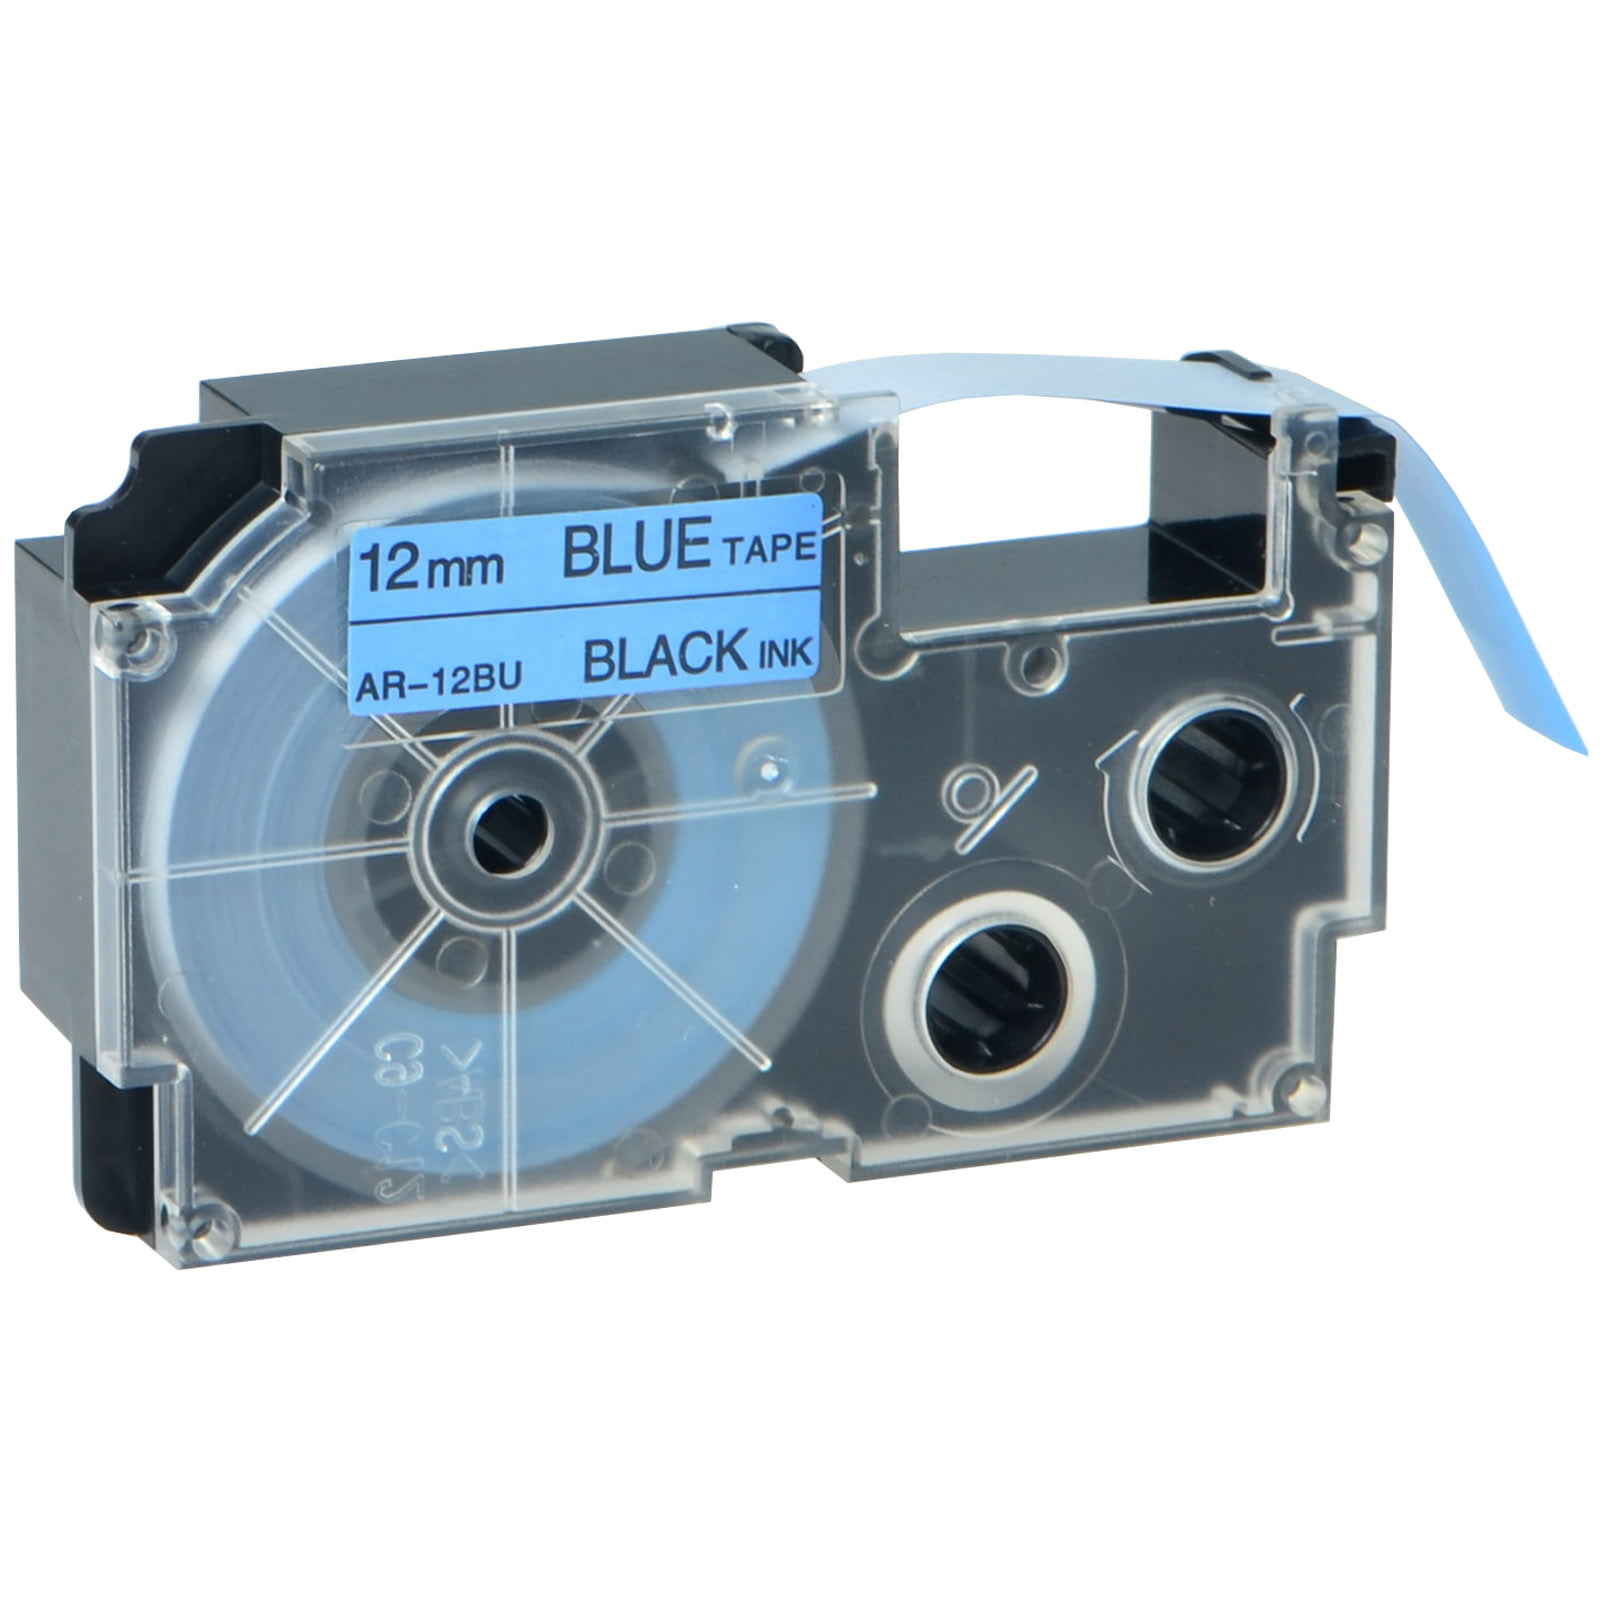 1PK XR-12BU Black on Blue Label Tape for Casio KL-7000KR 7000EDU P1000 1/2" 